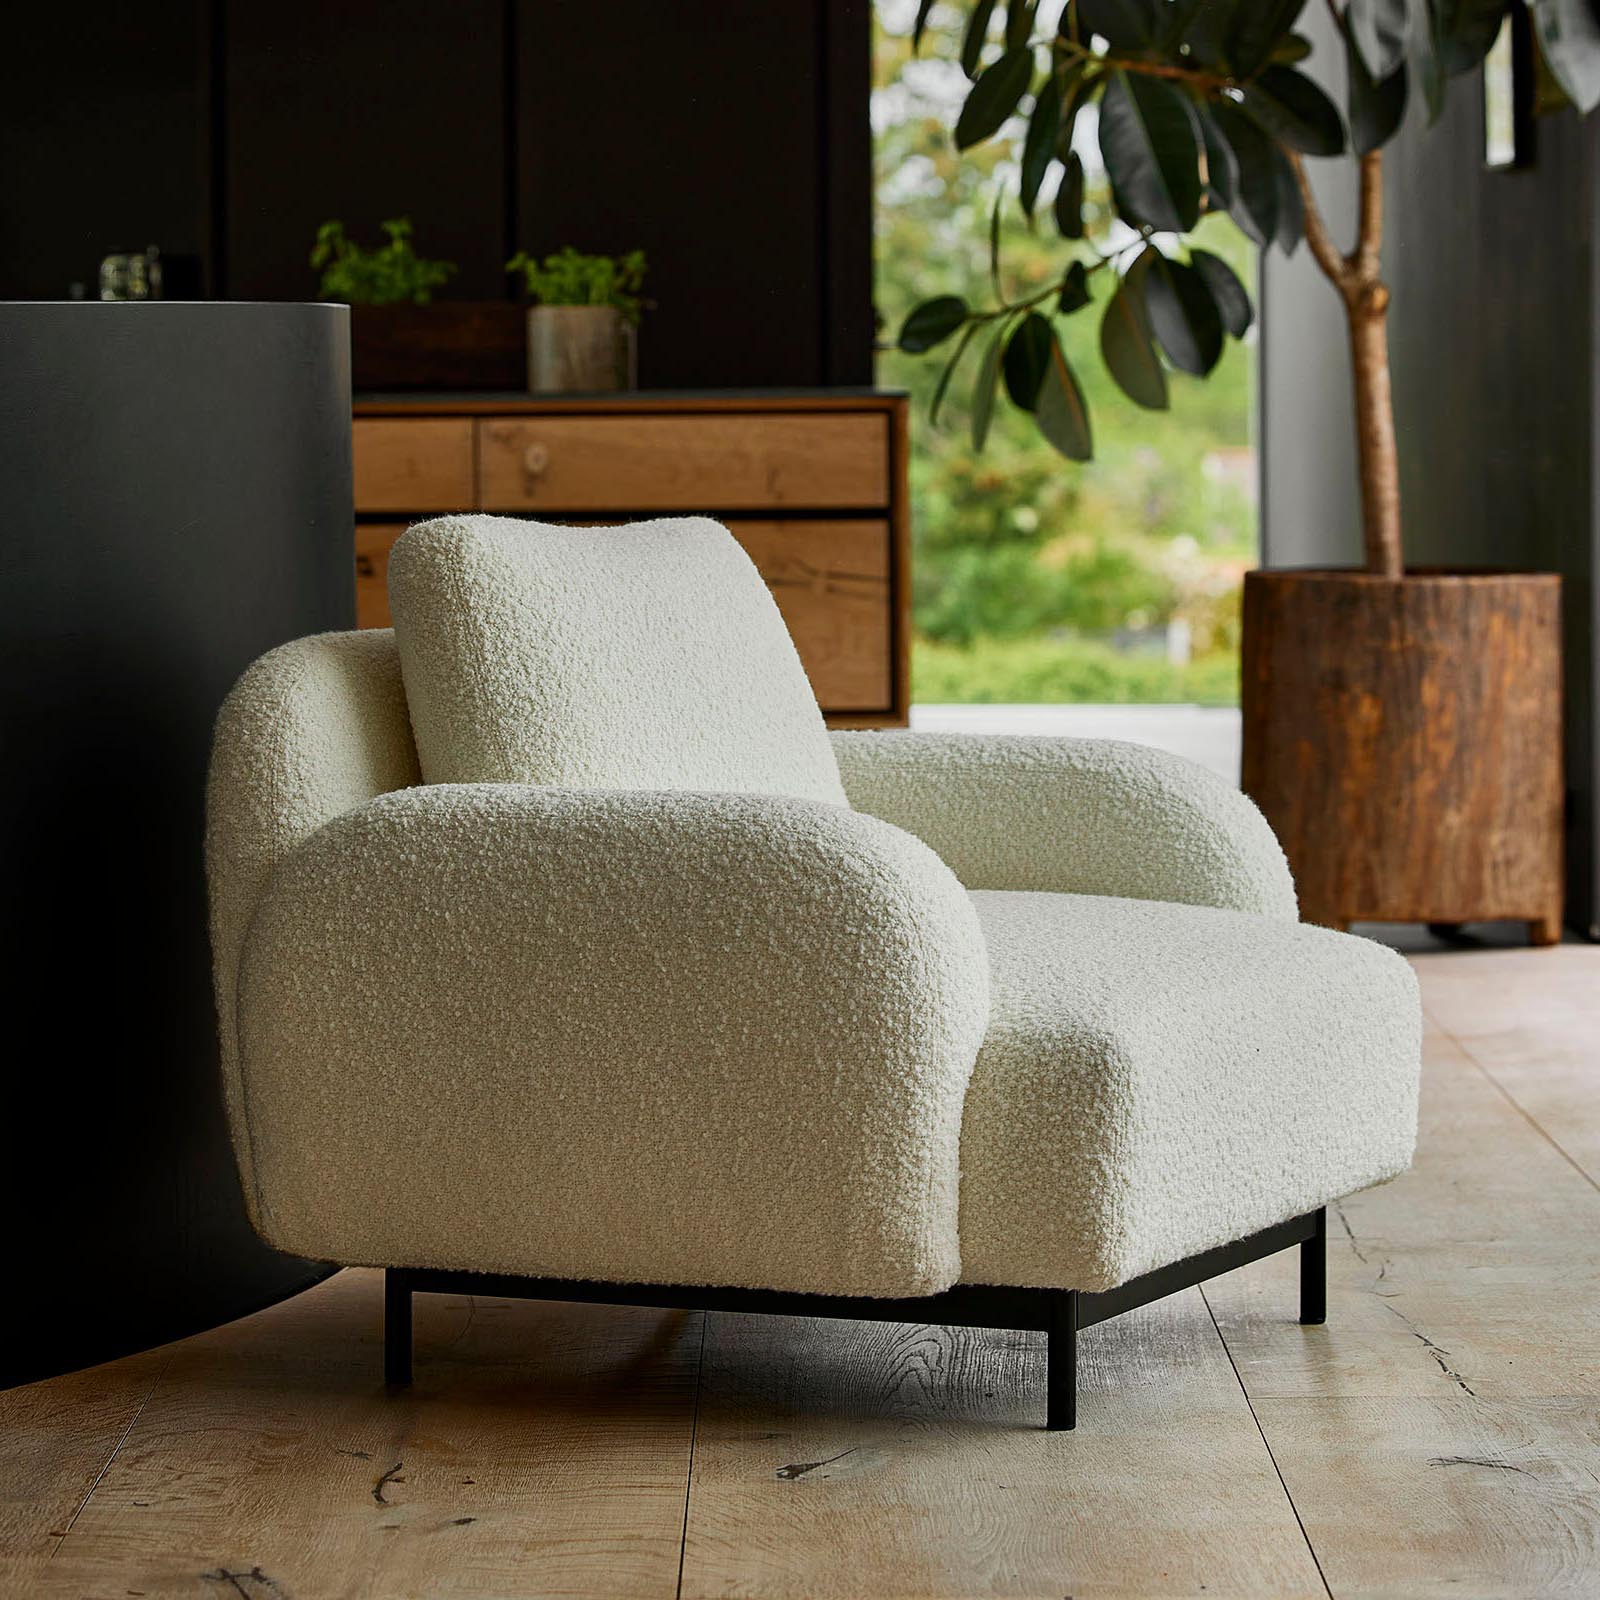 Aura 3-Sitzer Sofa mit niedrigen Armlehnen & Chaise Longue Links 22 aus Cane-line Essence in Light Grey